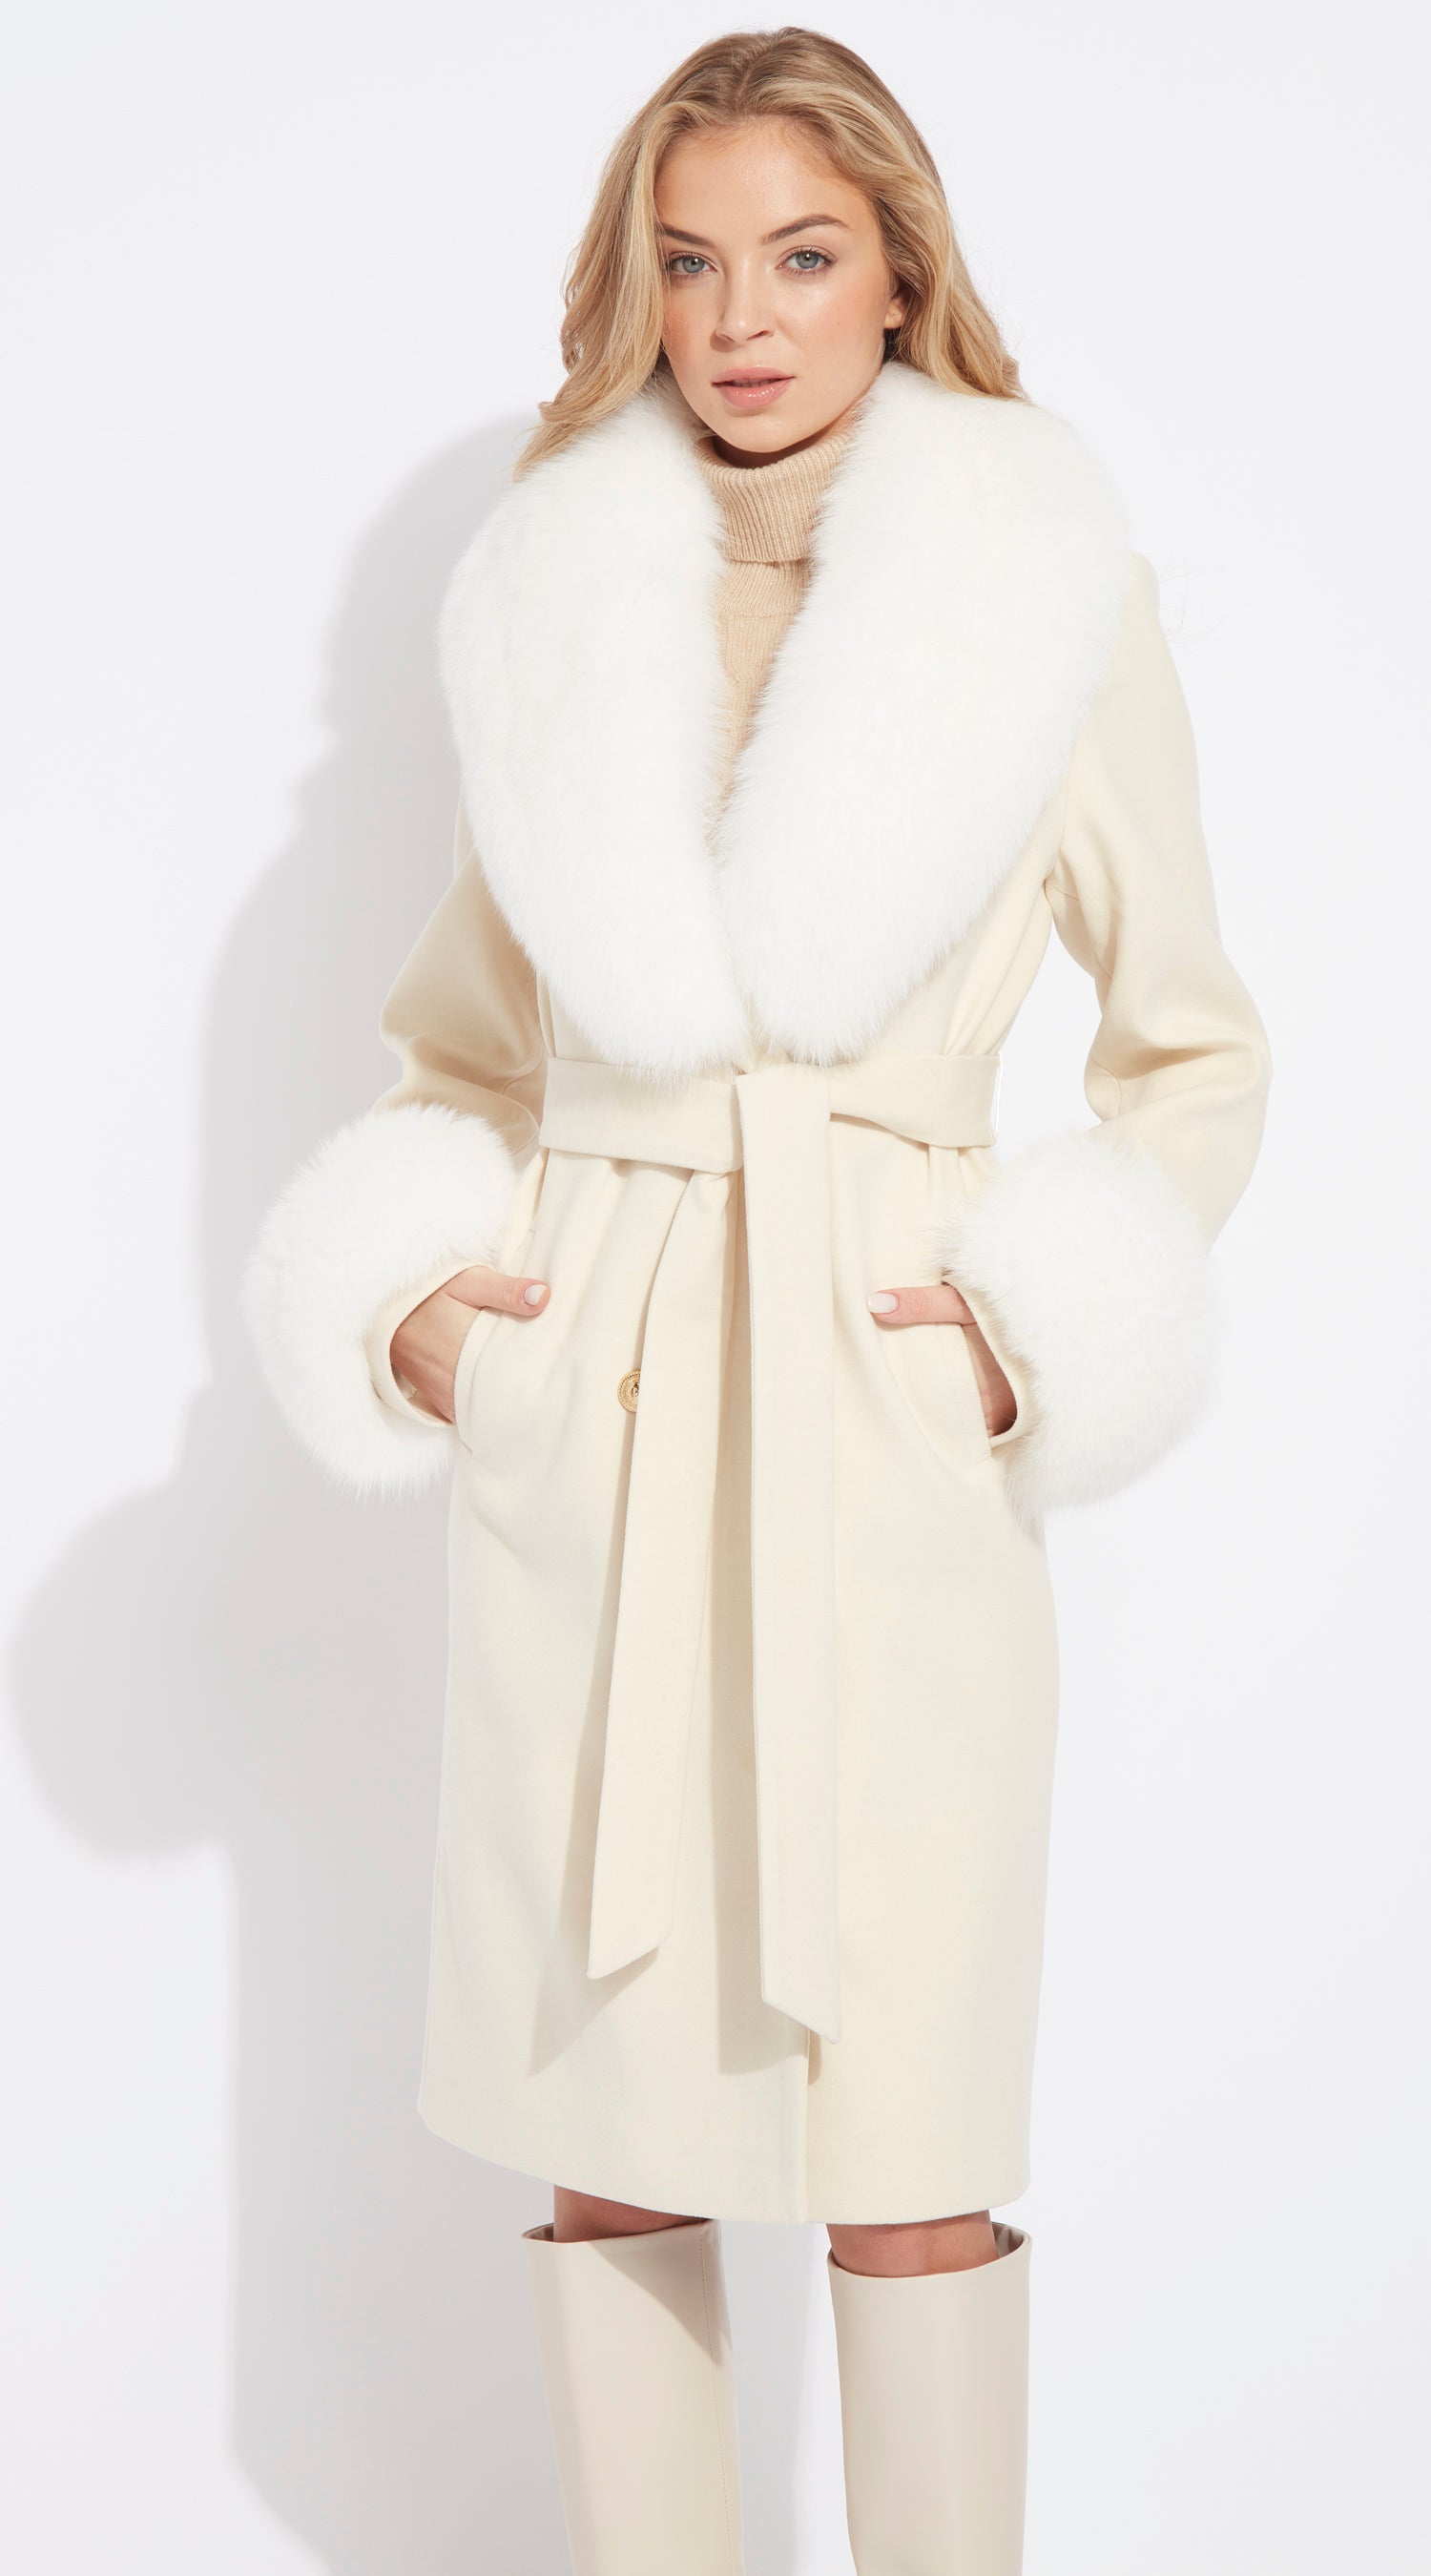 Shop Louis Vuitton Women's Cashmere & Fur Coats